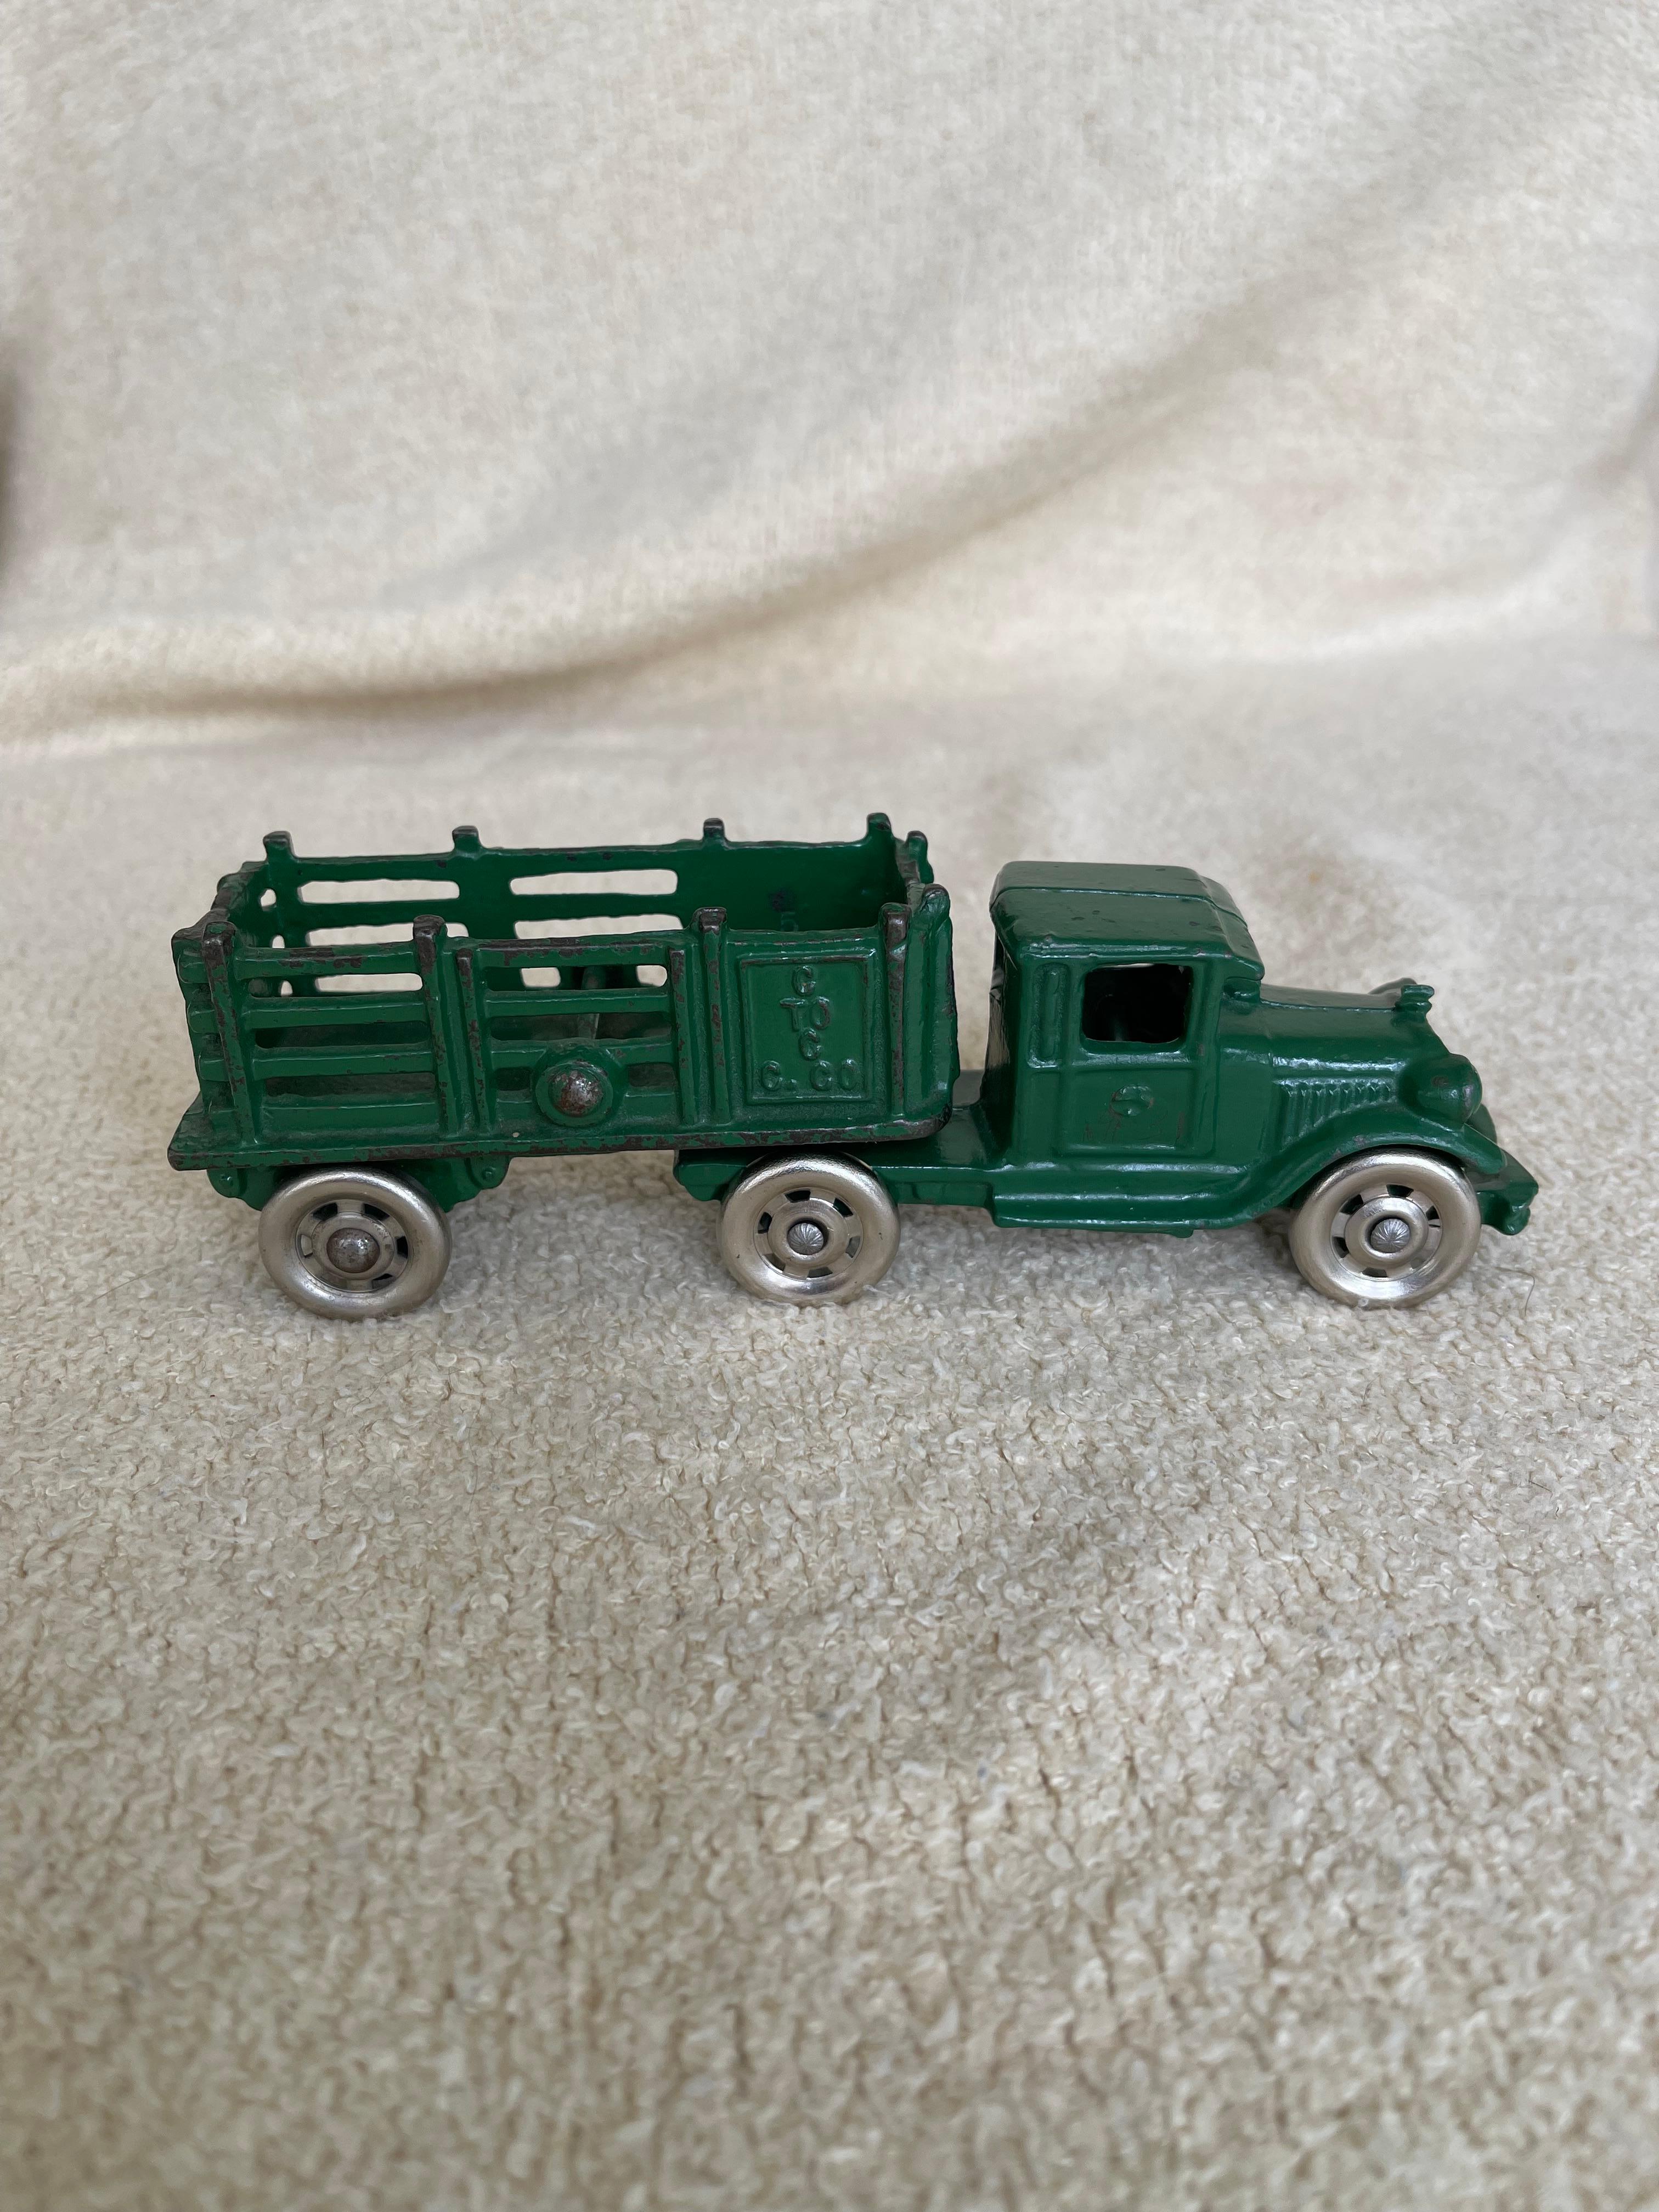  Ce magnifique camion est un bel exemple des merveilleux jouets en fonte fabriqués aux États-Unis dans la première moitié du XXe siècle. La peinture vert foncé et les roues en fer sont d'origine, et l'état de cette voiture est si difficile à